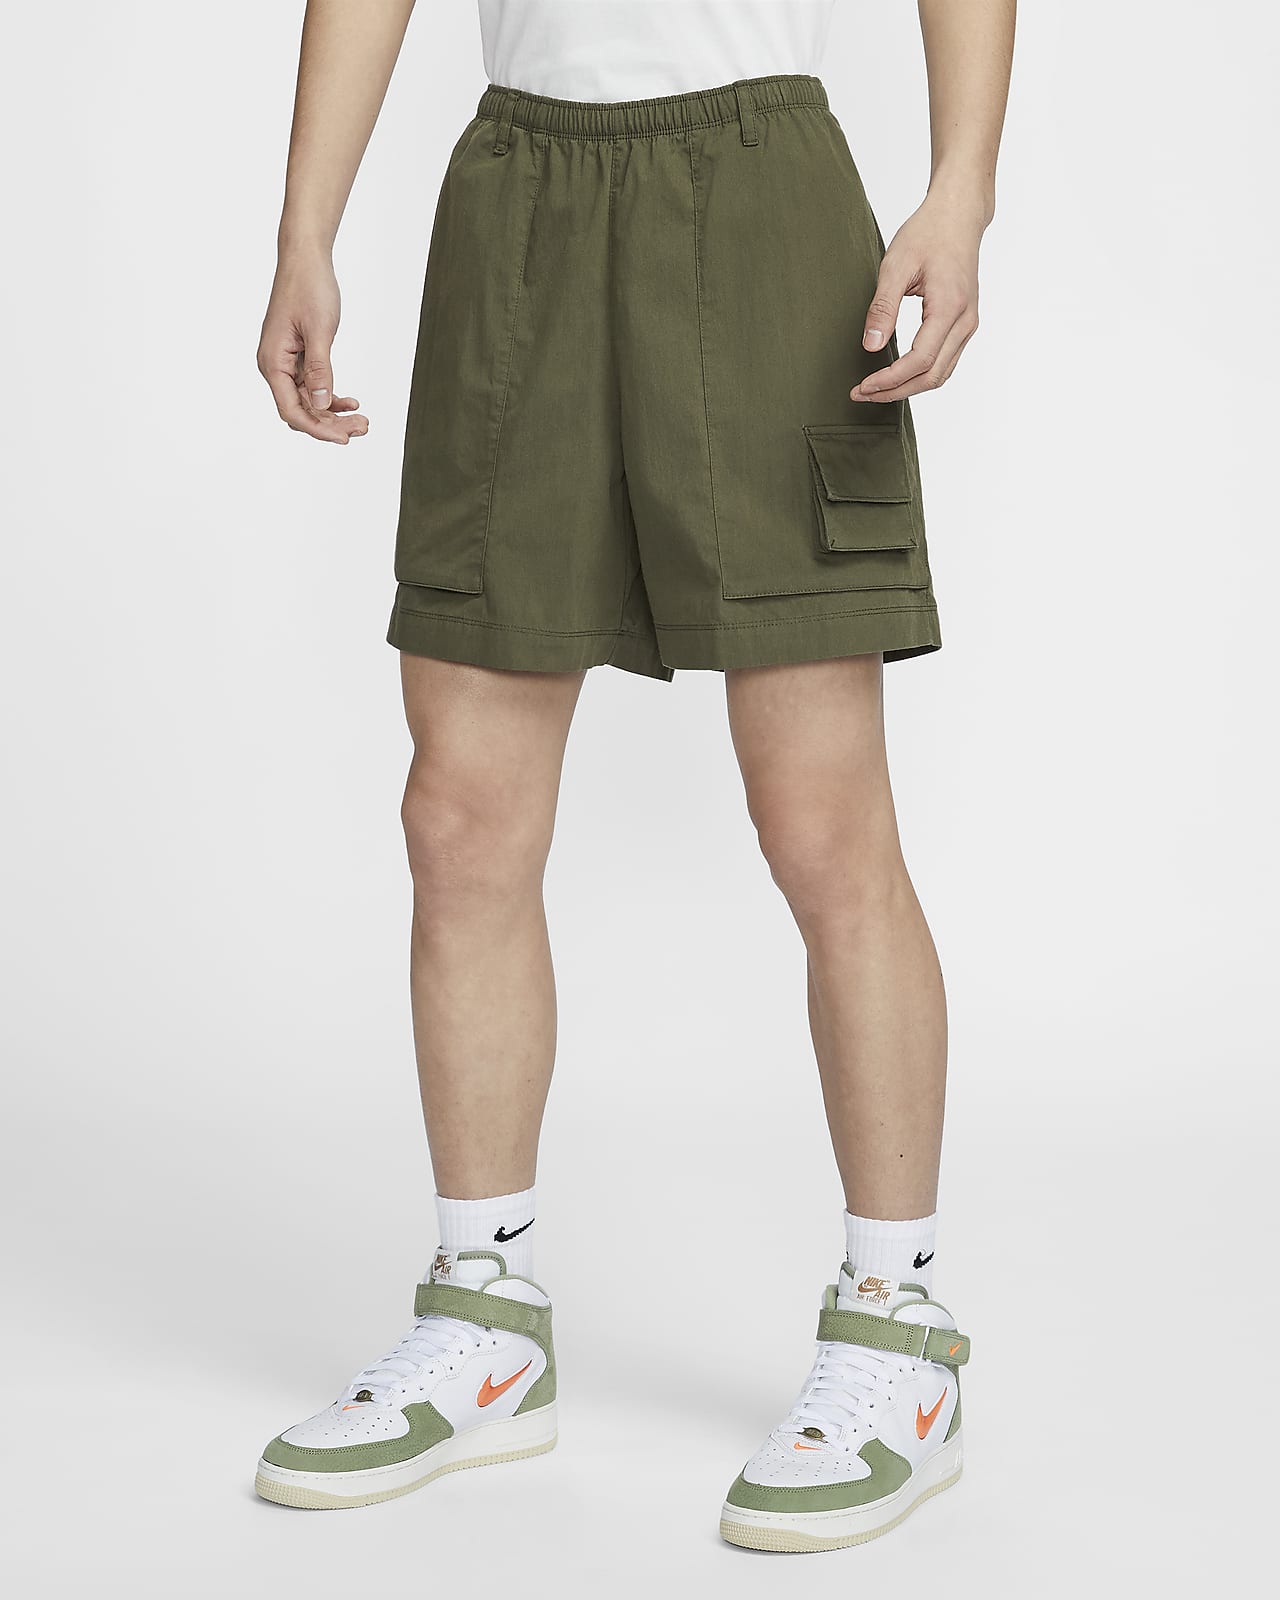 Nike Life 男款 Camp 短褲